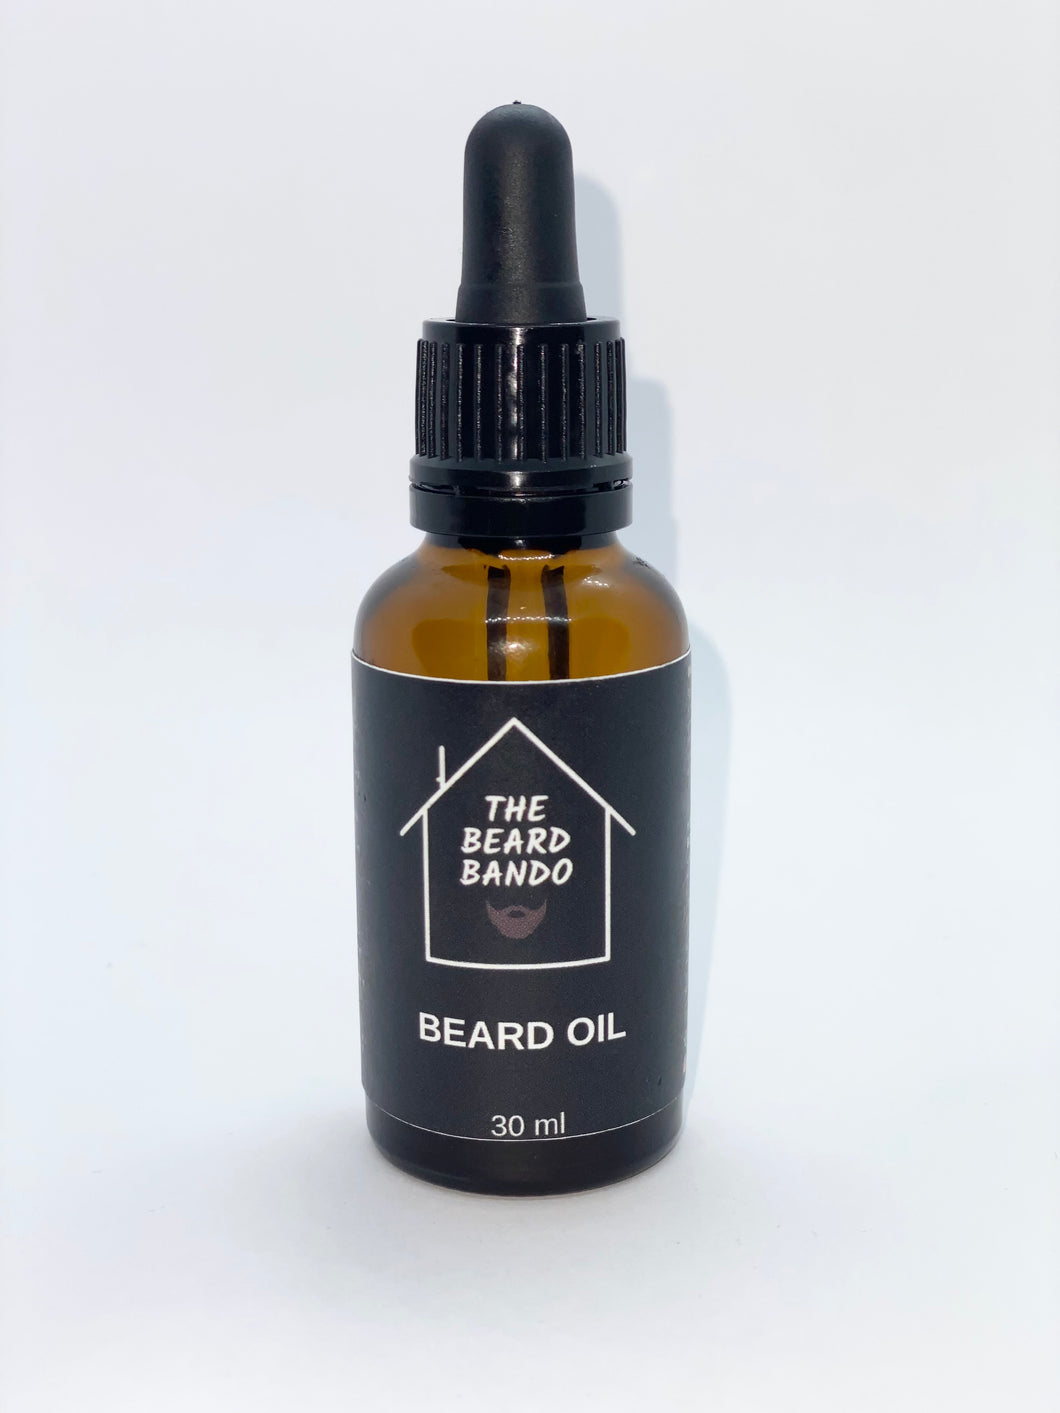 Bando Beard Oil #4 by the Beard Bando